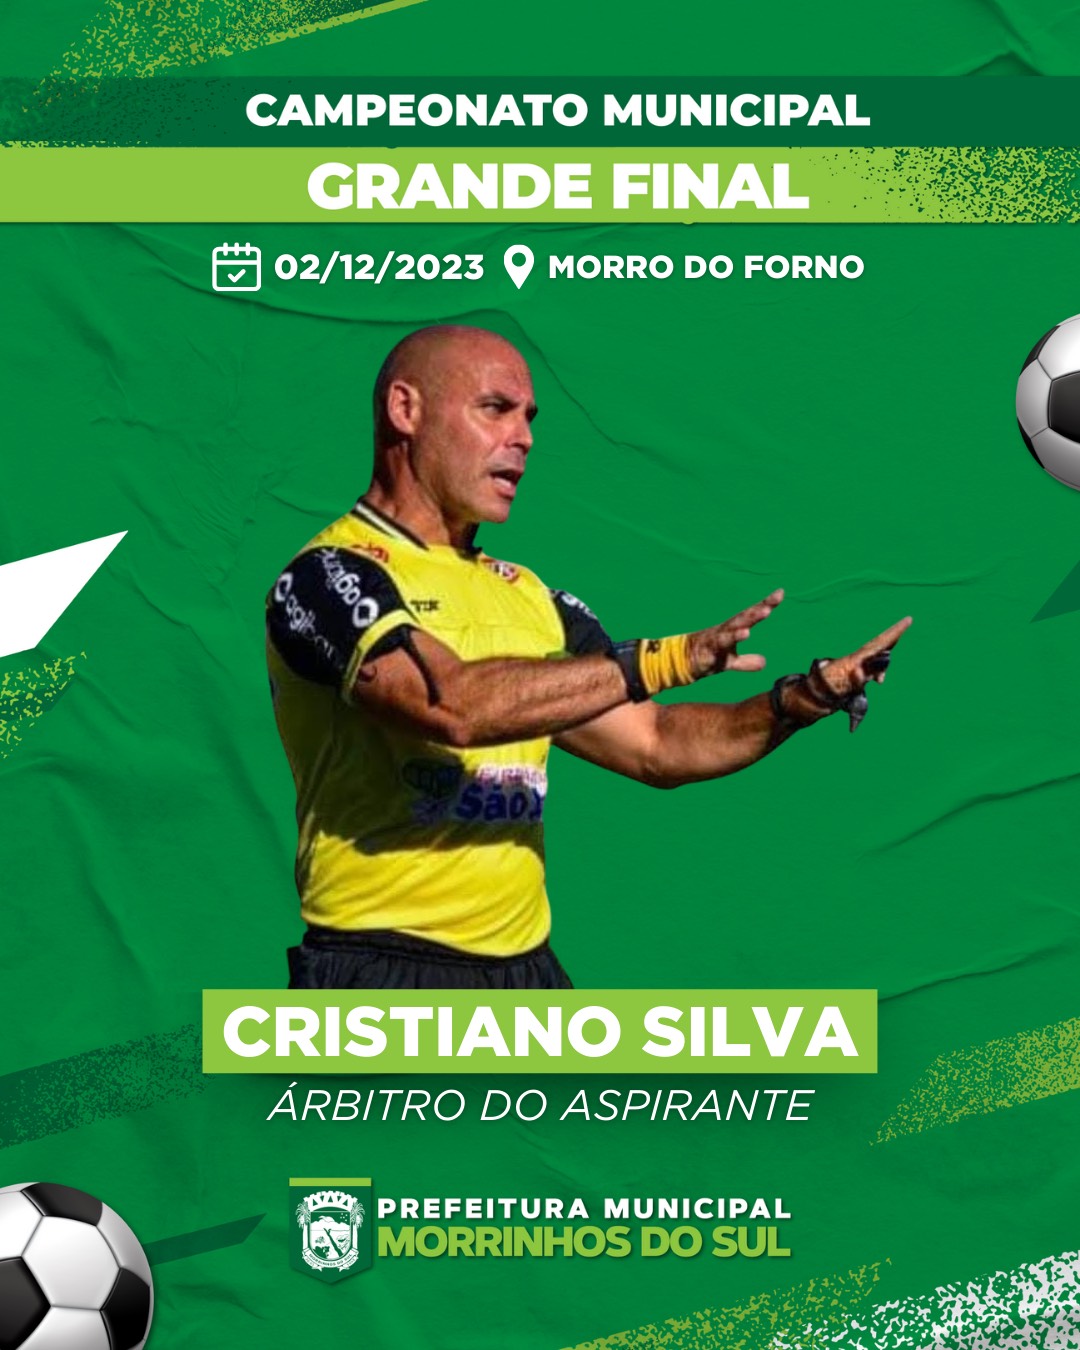 Copa RS retoma jogos da fase estadual no domingo (8) - Portal do Estado do  Rio Grande do Sul